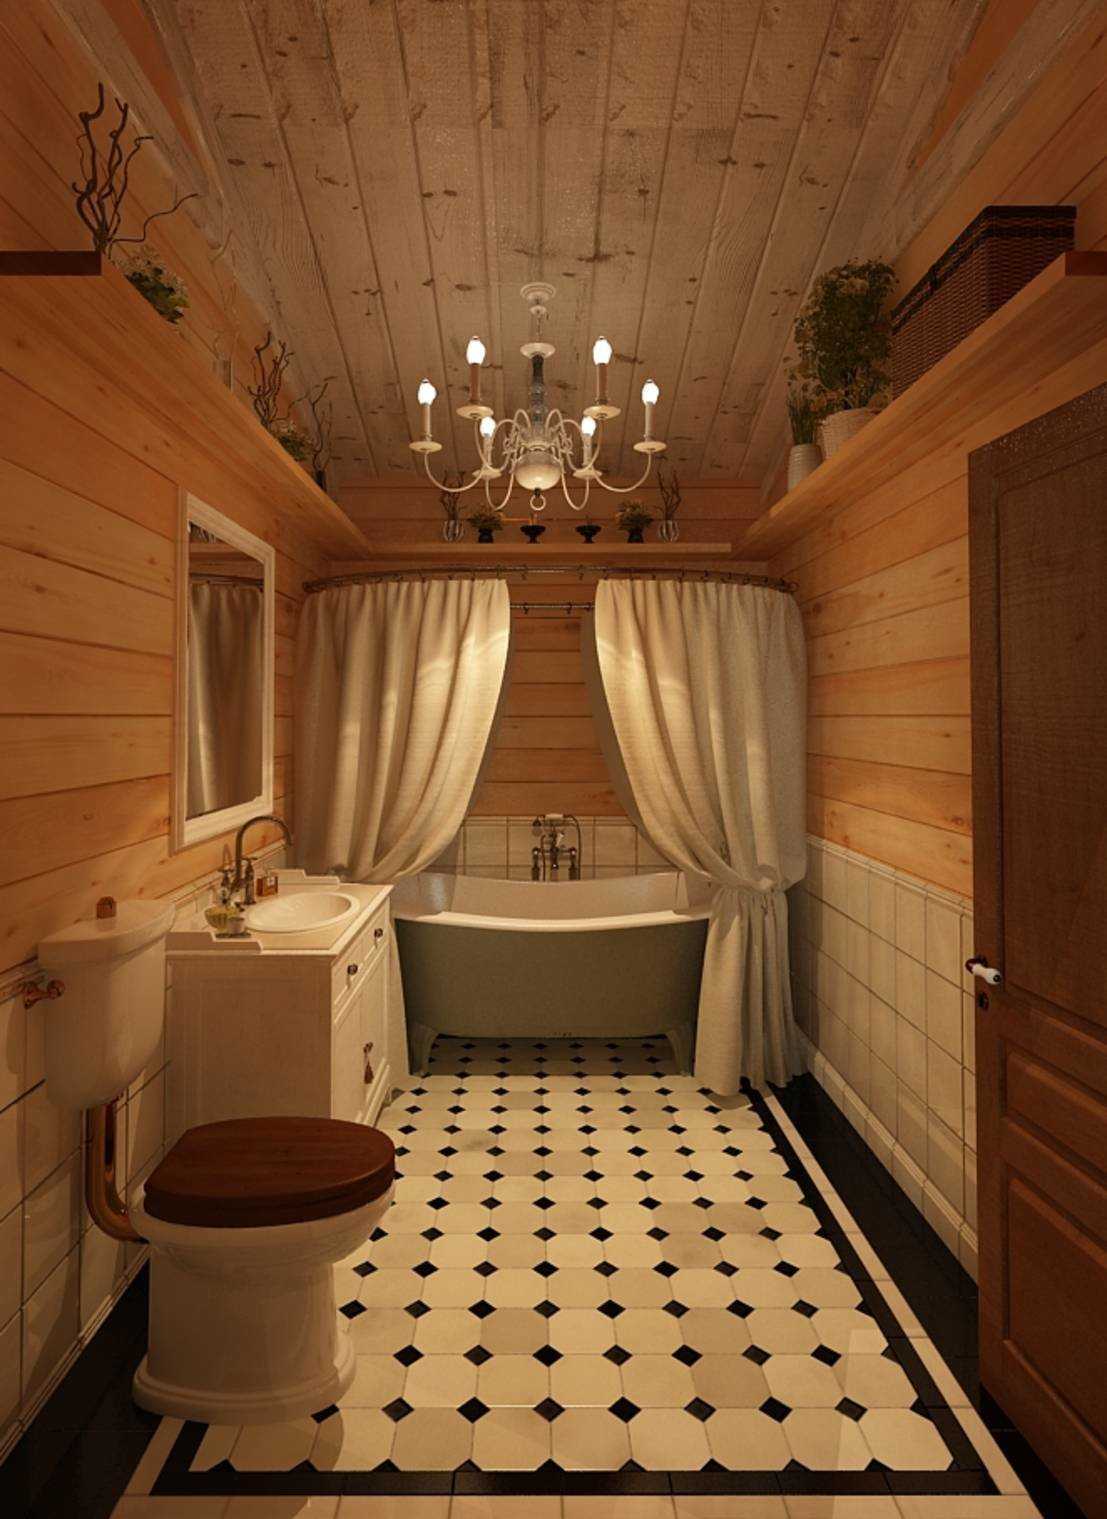 Ванная комната в деревянном доме – как сделать, чем отделать? (видео)